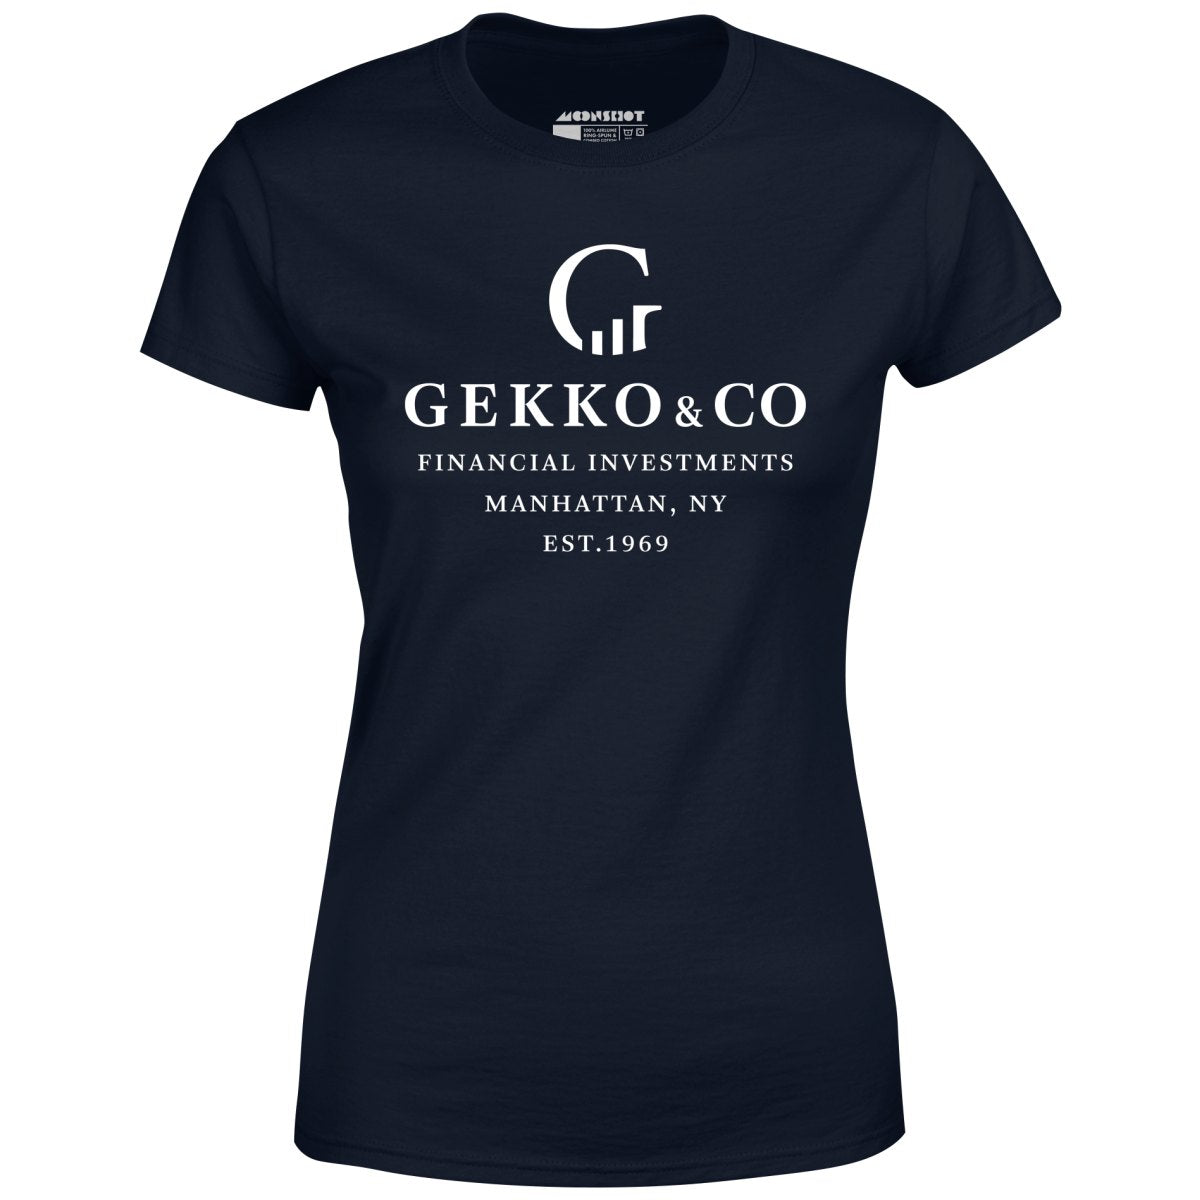 Gekko & Co. Financial Investments - Wall Street - Women's T-Shirt